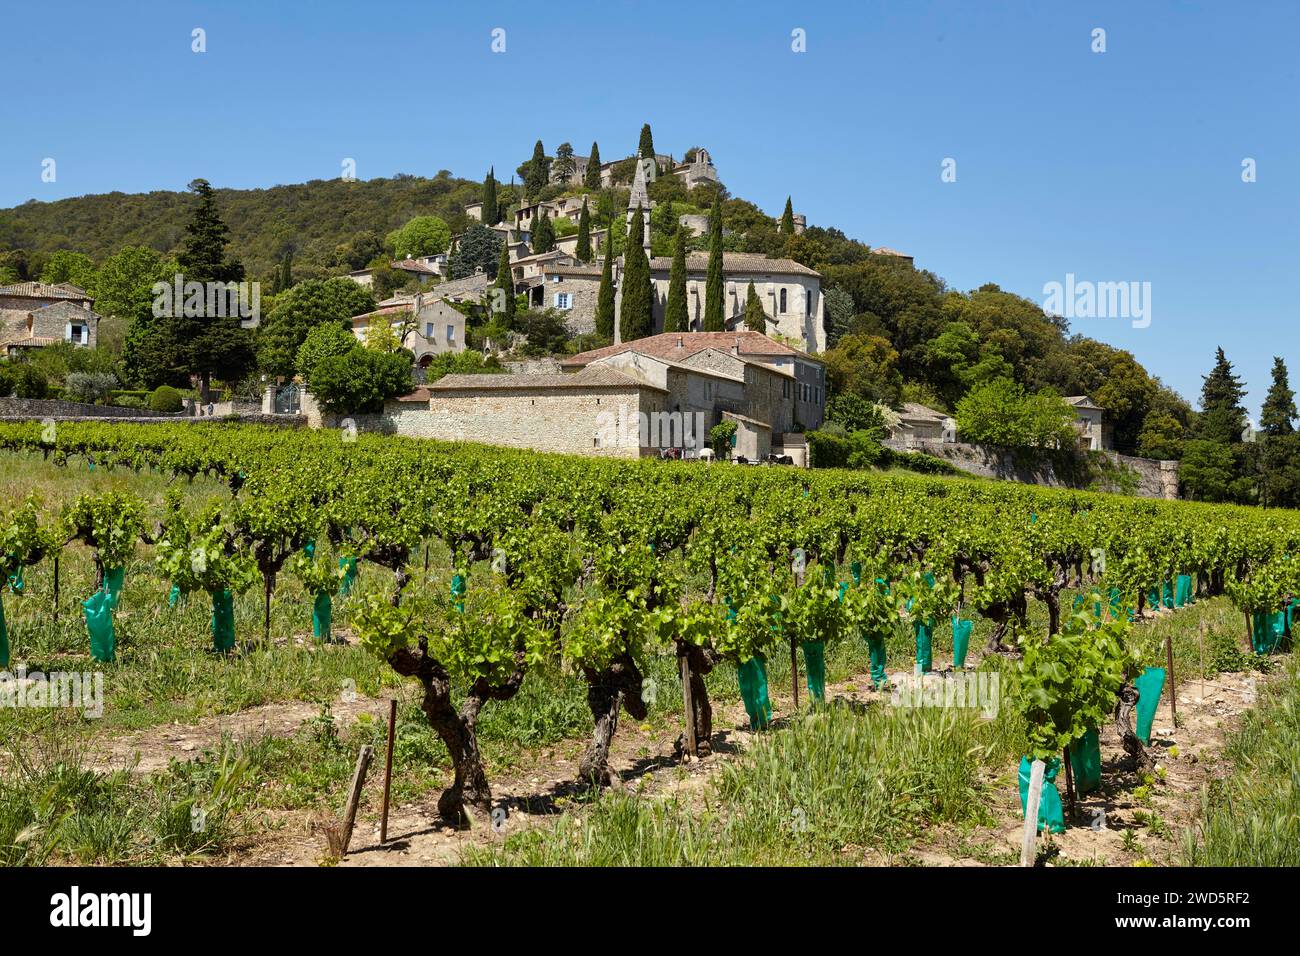 Campo con viñas (Vitis vinifera) y la comuna de La Roque-sur-Ceze construida en una colina, departamento de Gard, región de Occitanie, Francia Foto de stock